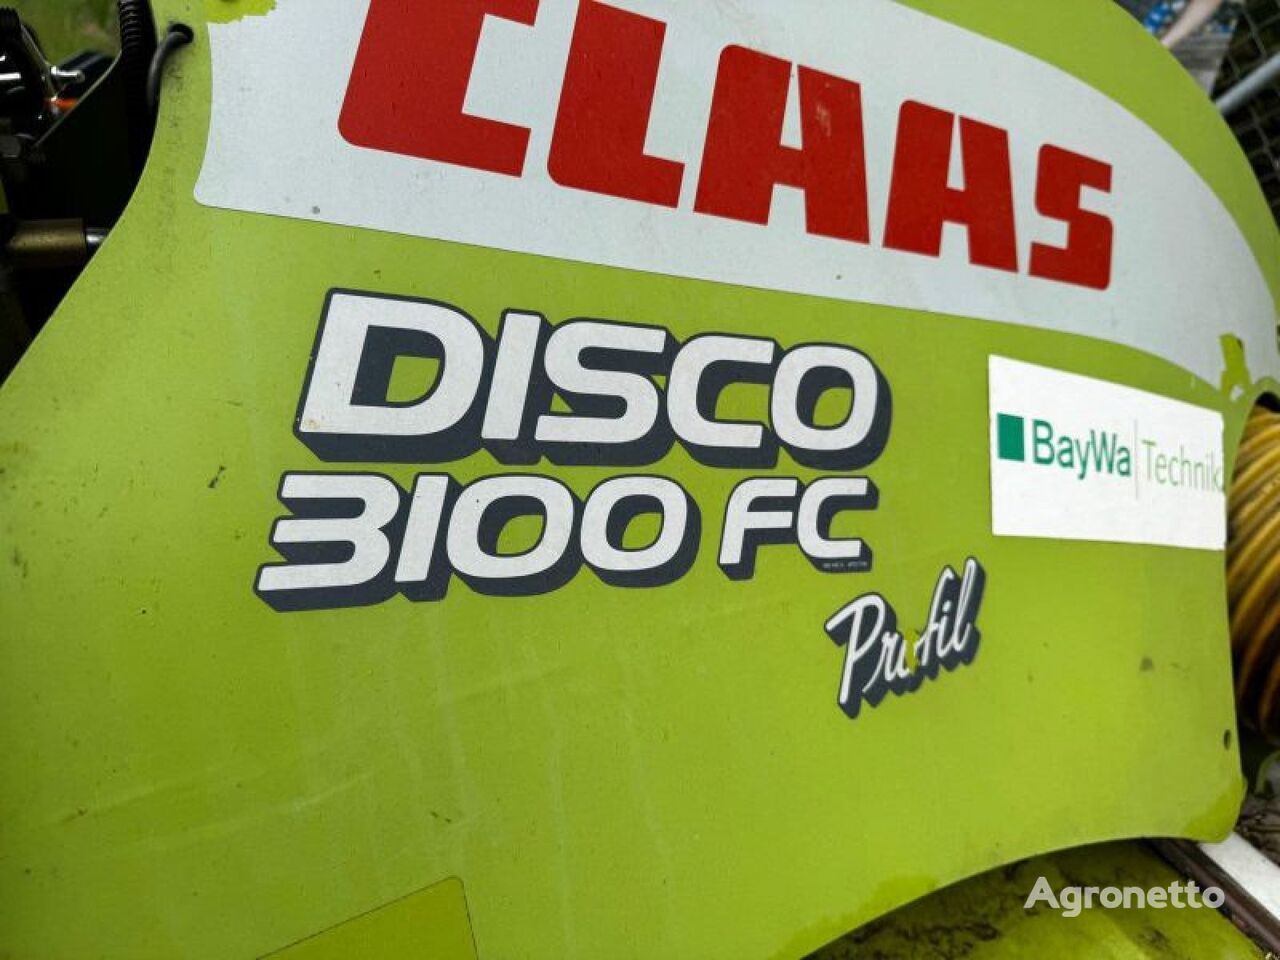 θεριστική θραυστική μηχανή Claas DISCO 3100 FC PROFIL (E)